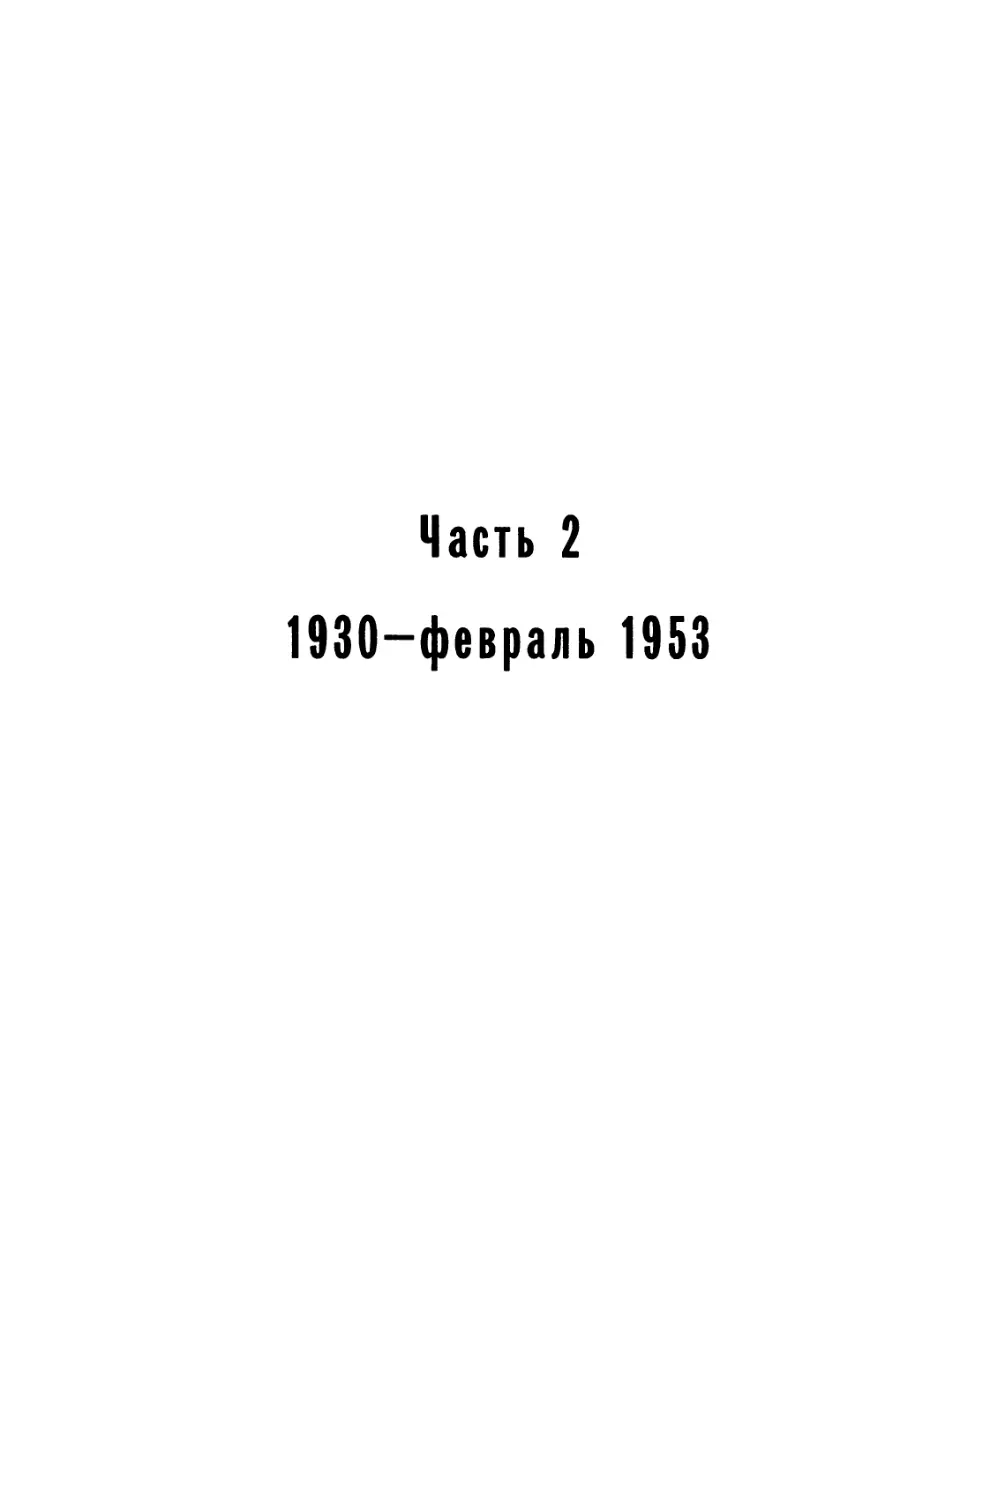 Часть 2. 1930 - февраль 1953